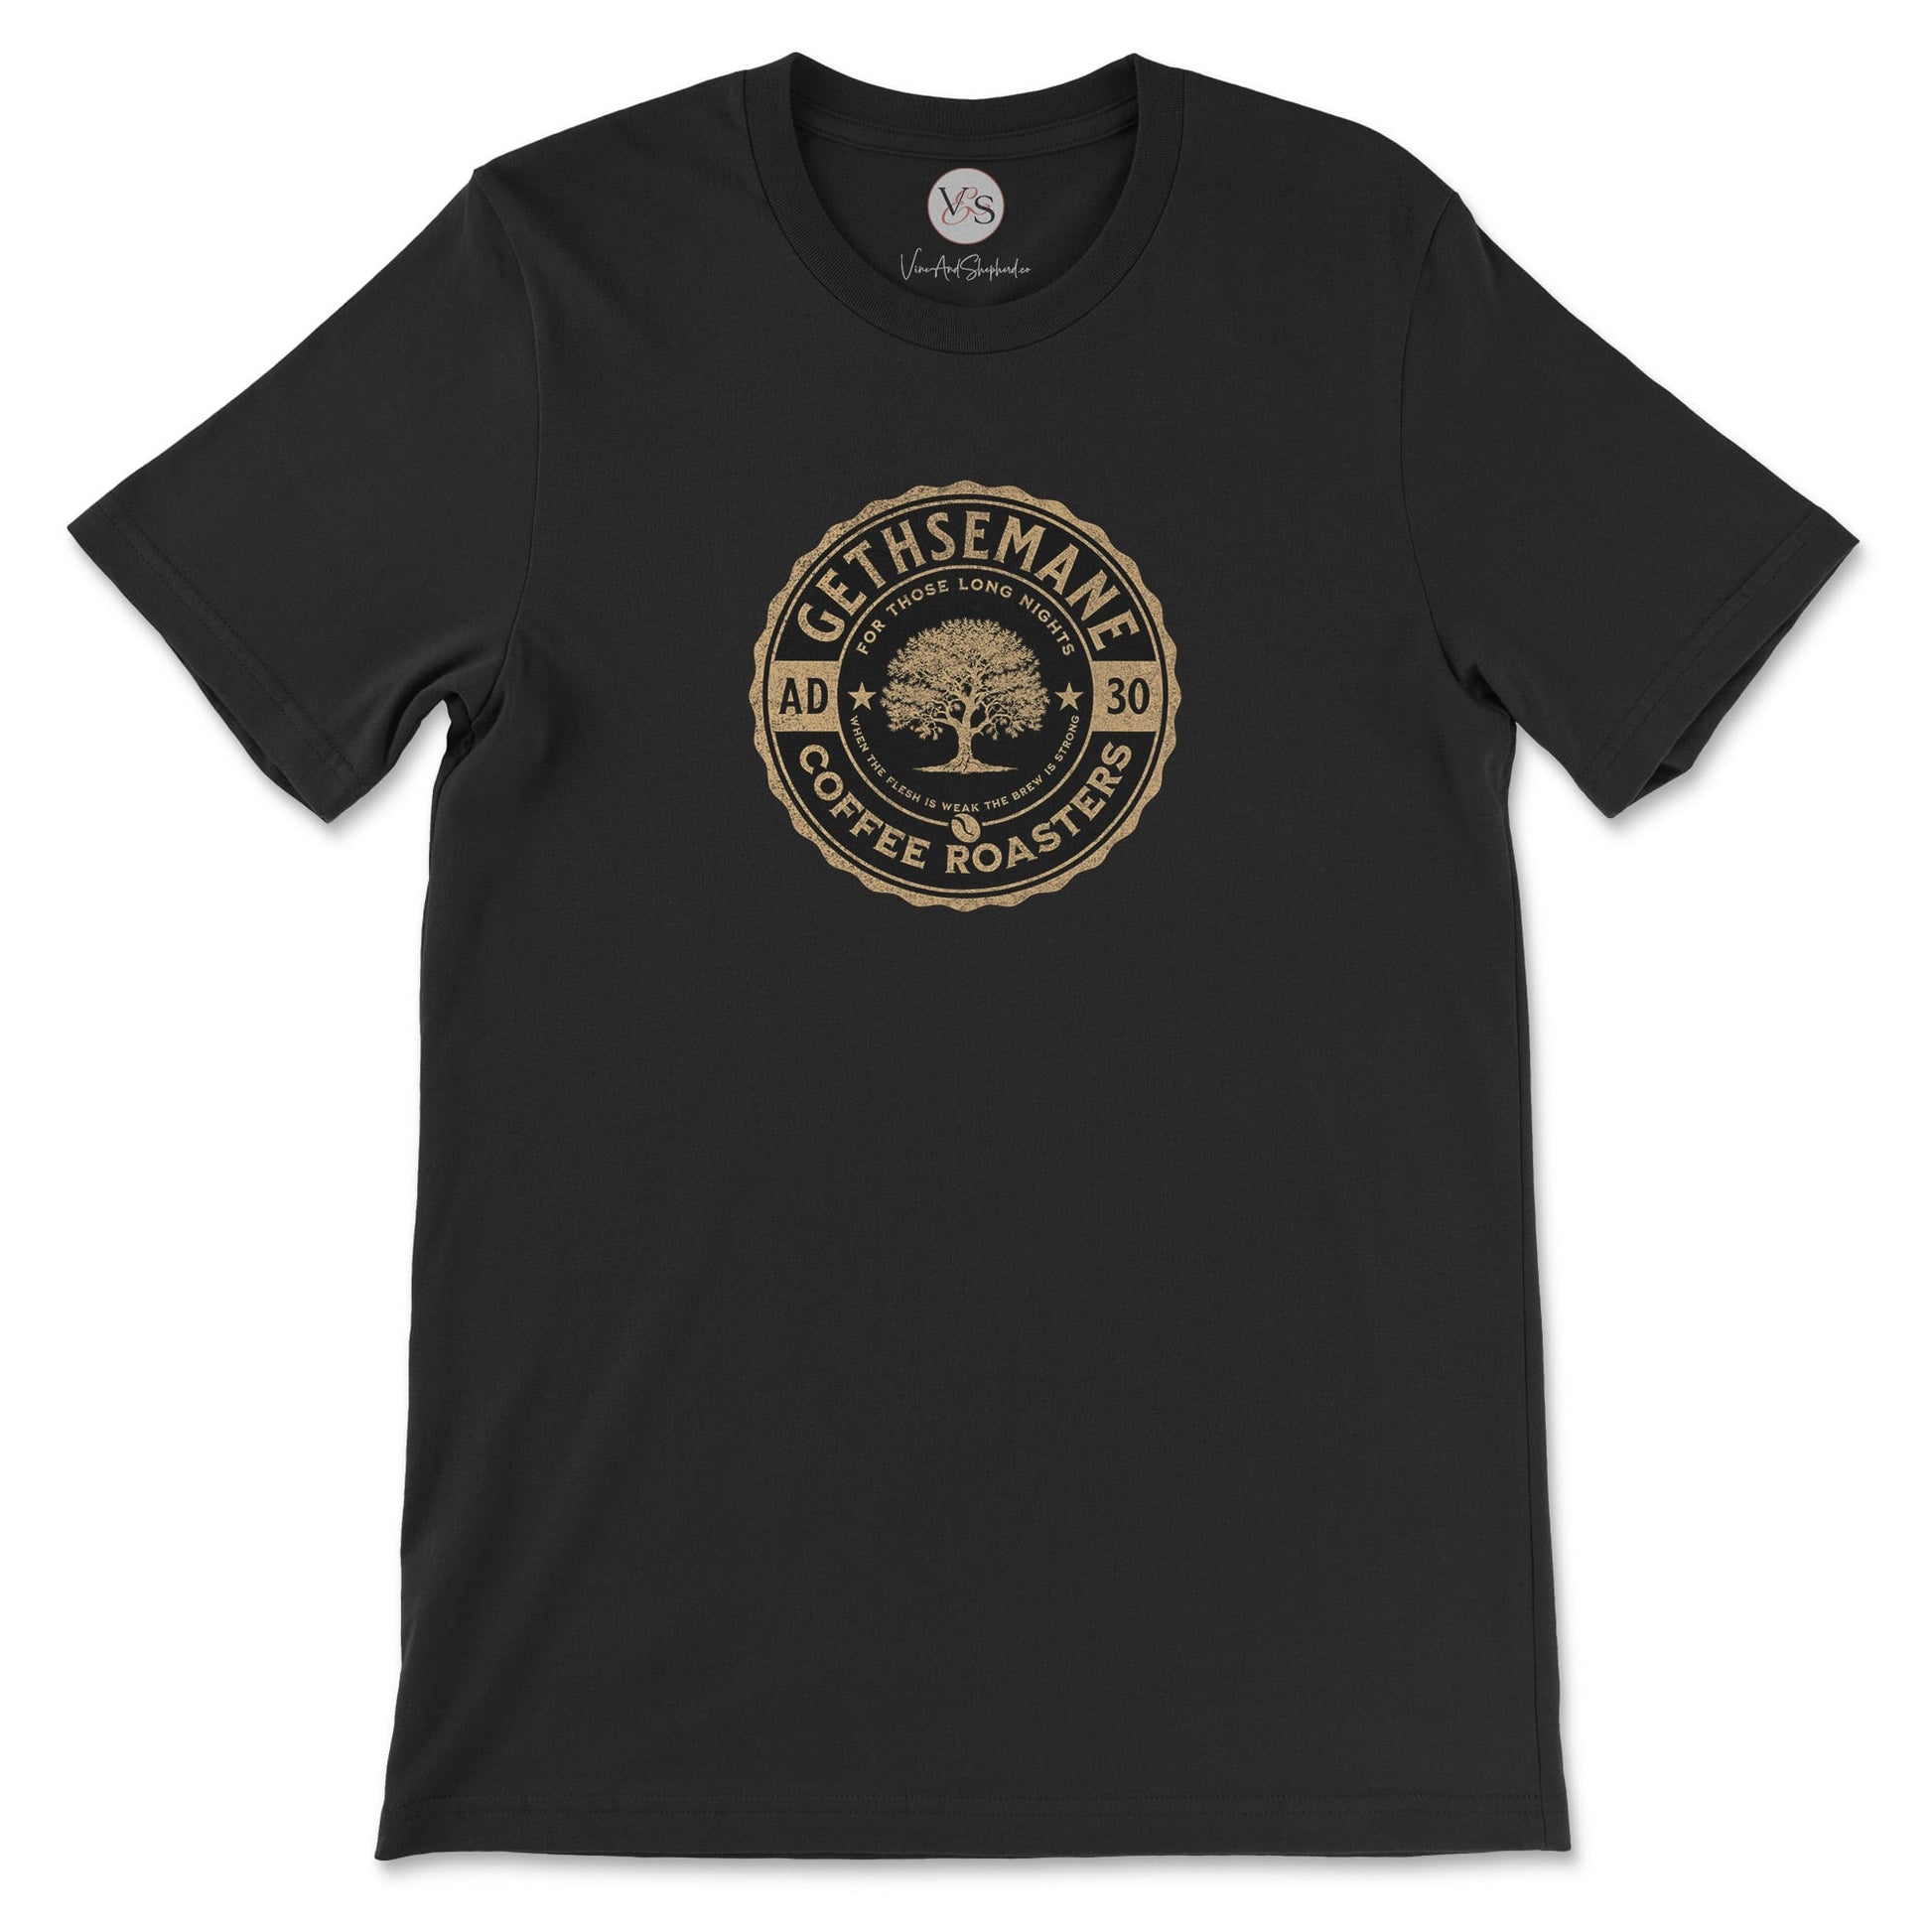 Gethsemane Coffee Roasters t-shirt in vintage black